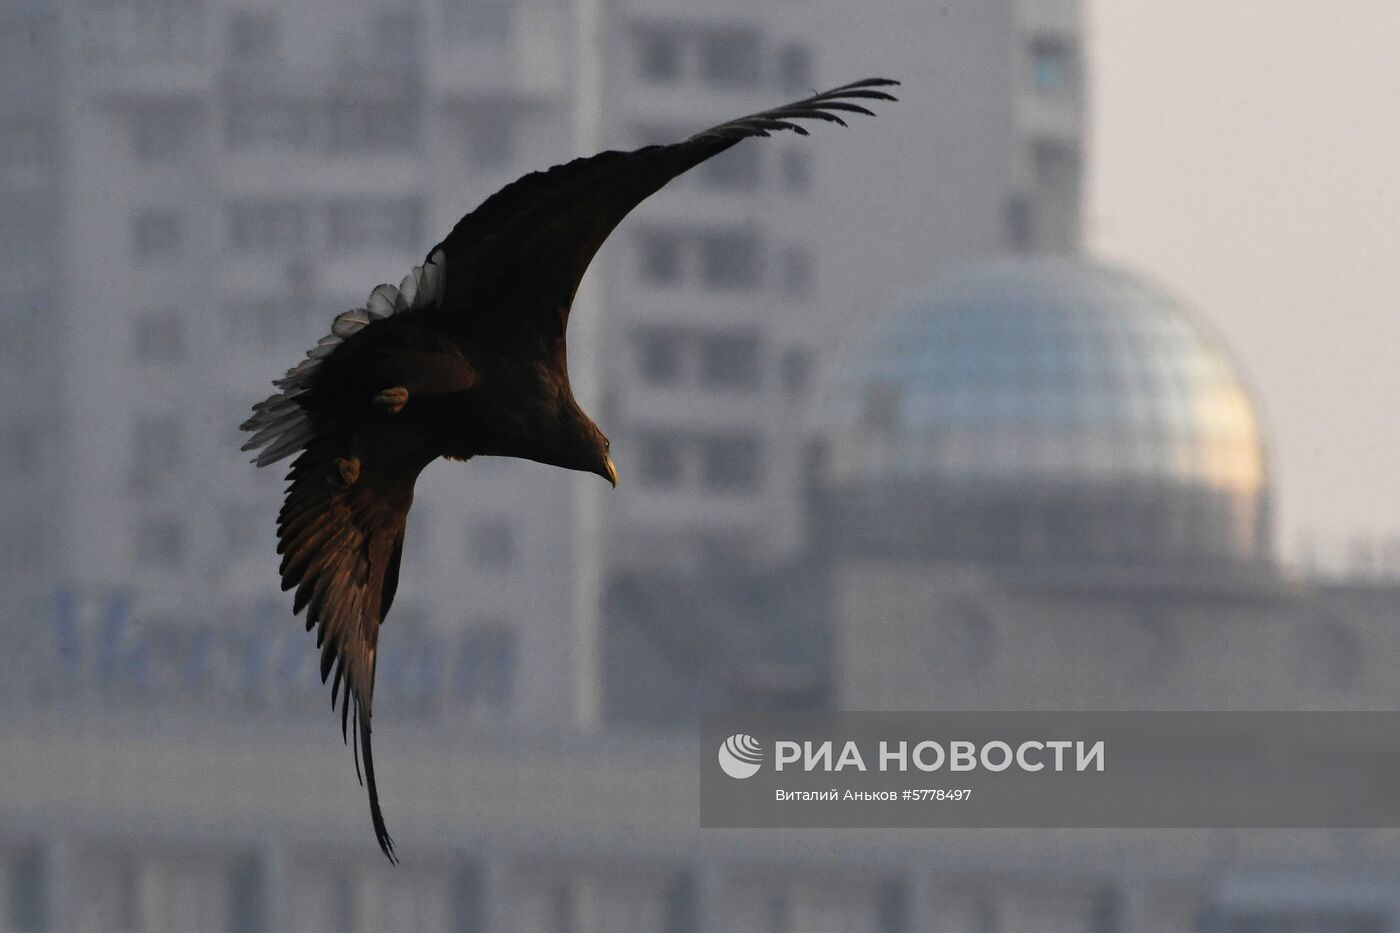 Животный мир бухты Золотой Рог во Владивостоке